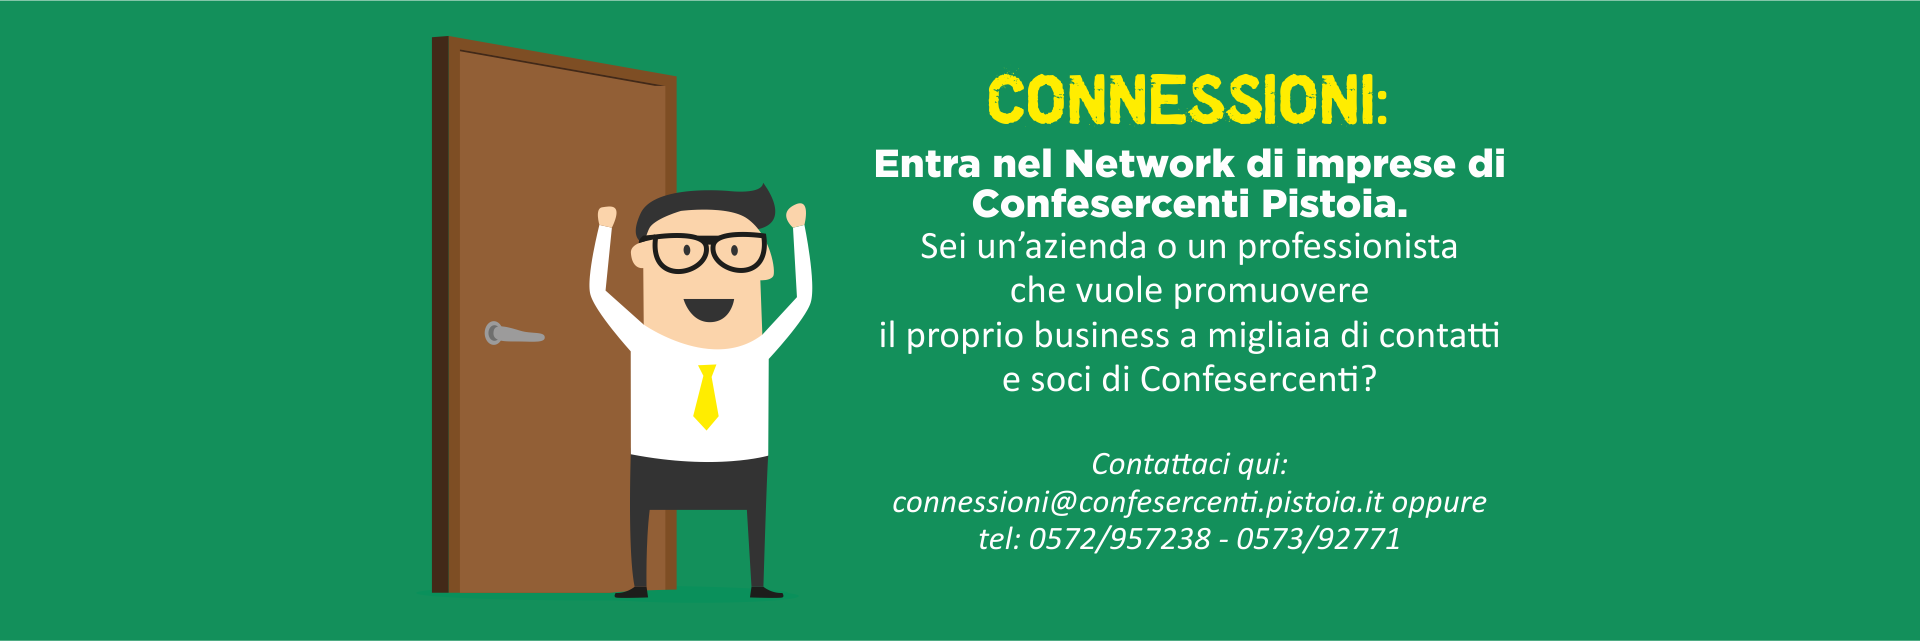 Un network di aziende a portata di click! Connessioni è il progetto di Confesercenti Pistoia per la promozione dei soci.